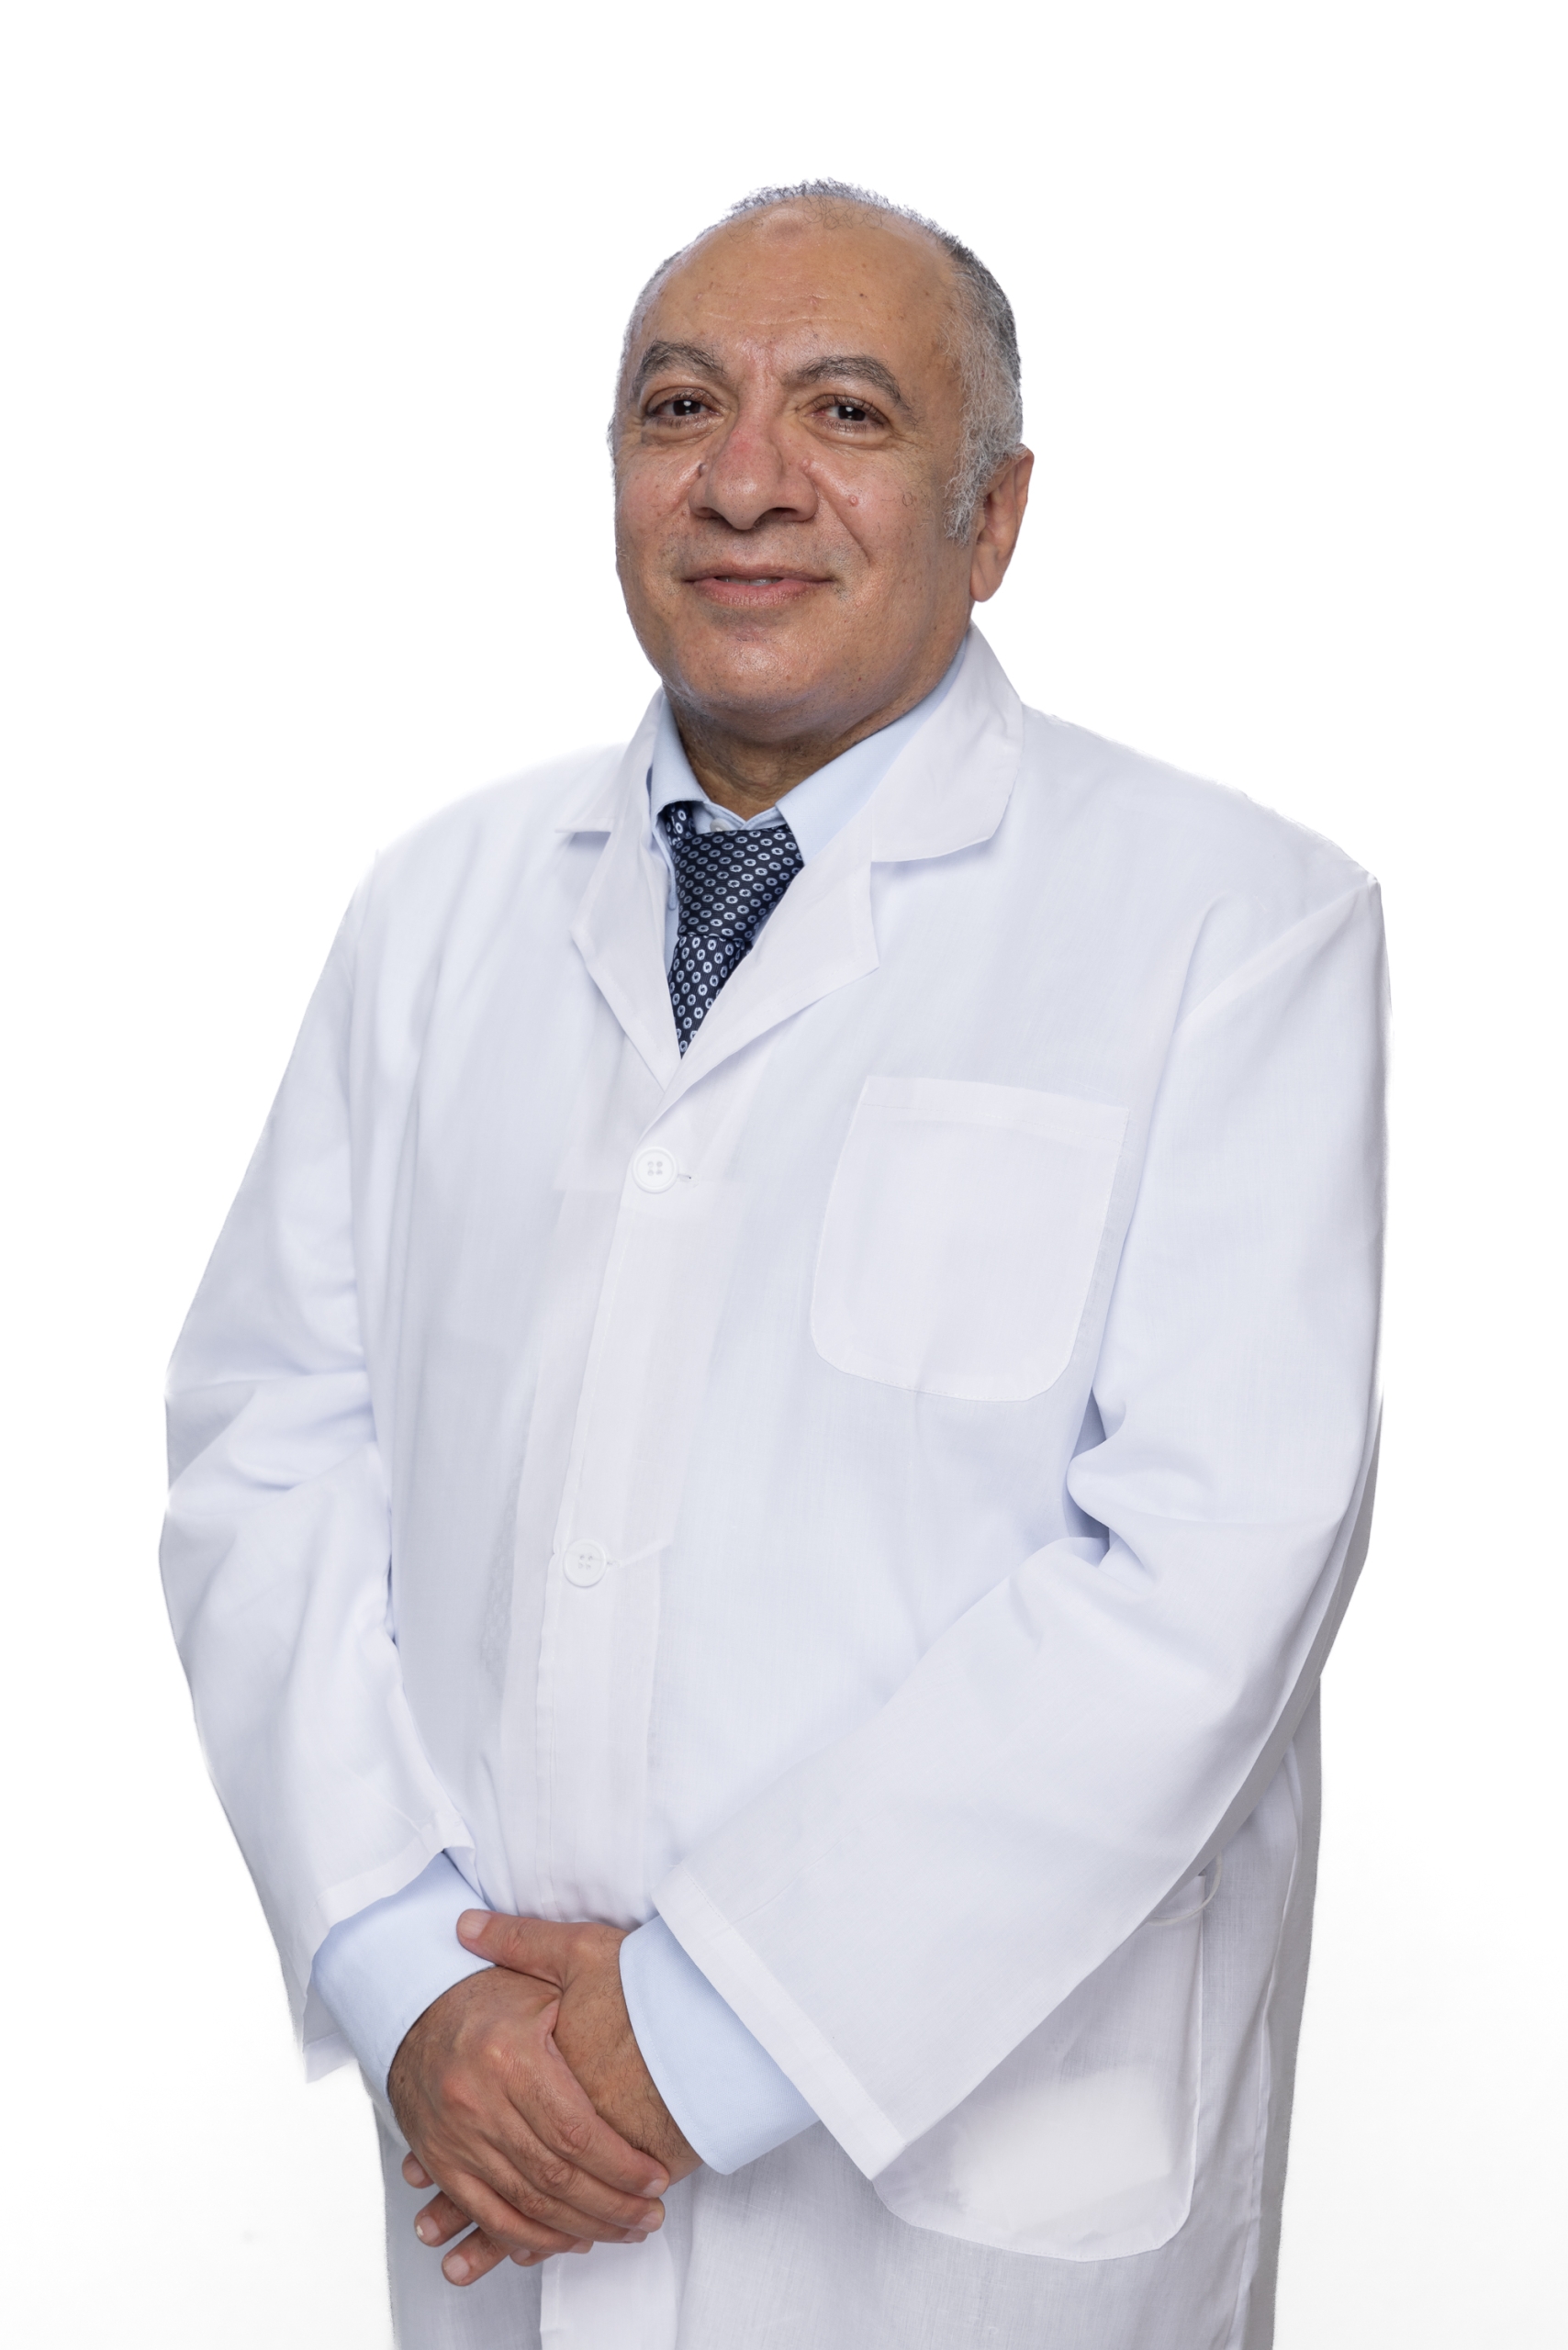 Dr. Mahmoud Galal Mahmoud Ahmed